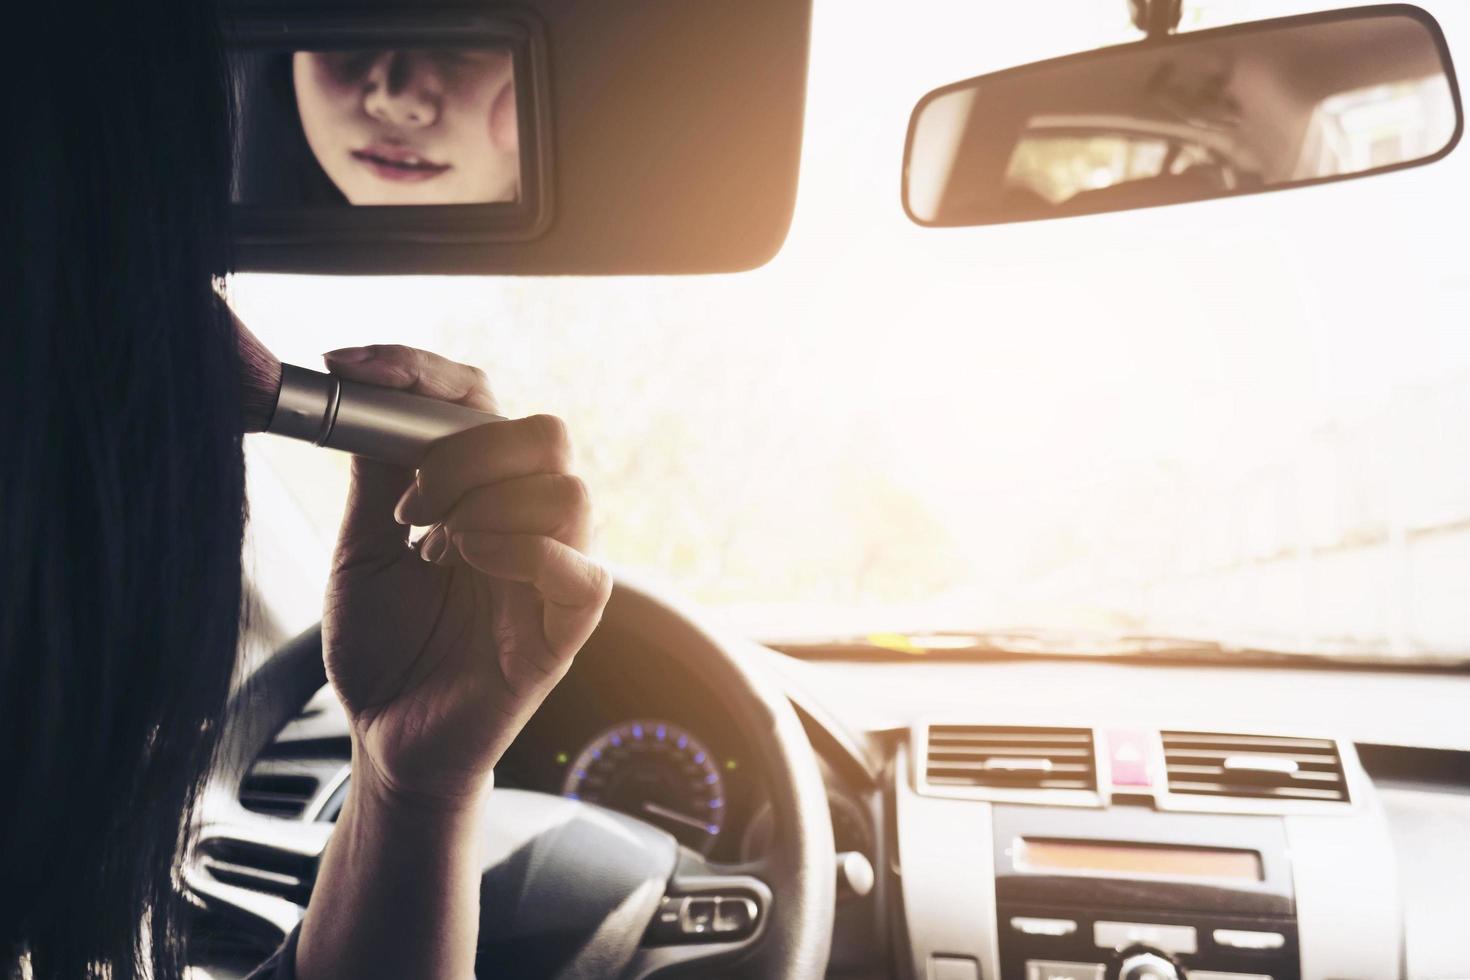 vrouw make-up haar gezicht met blush borstel tijdens het autorijden, onveilig gedrag foto